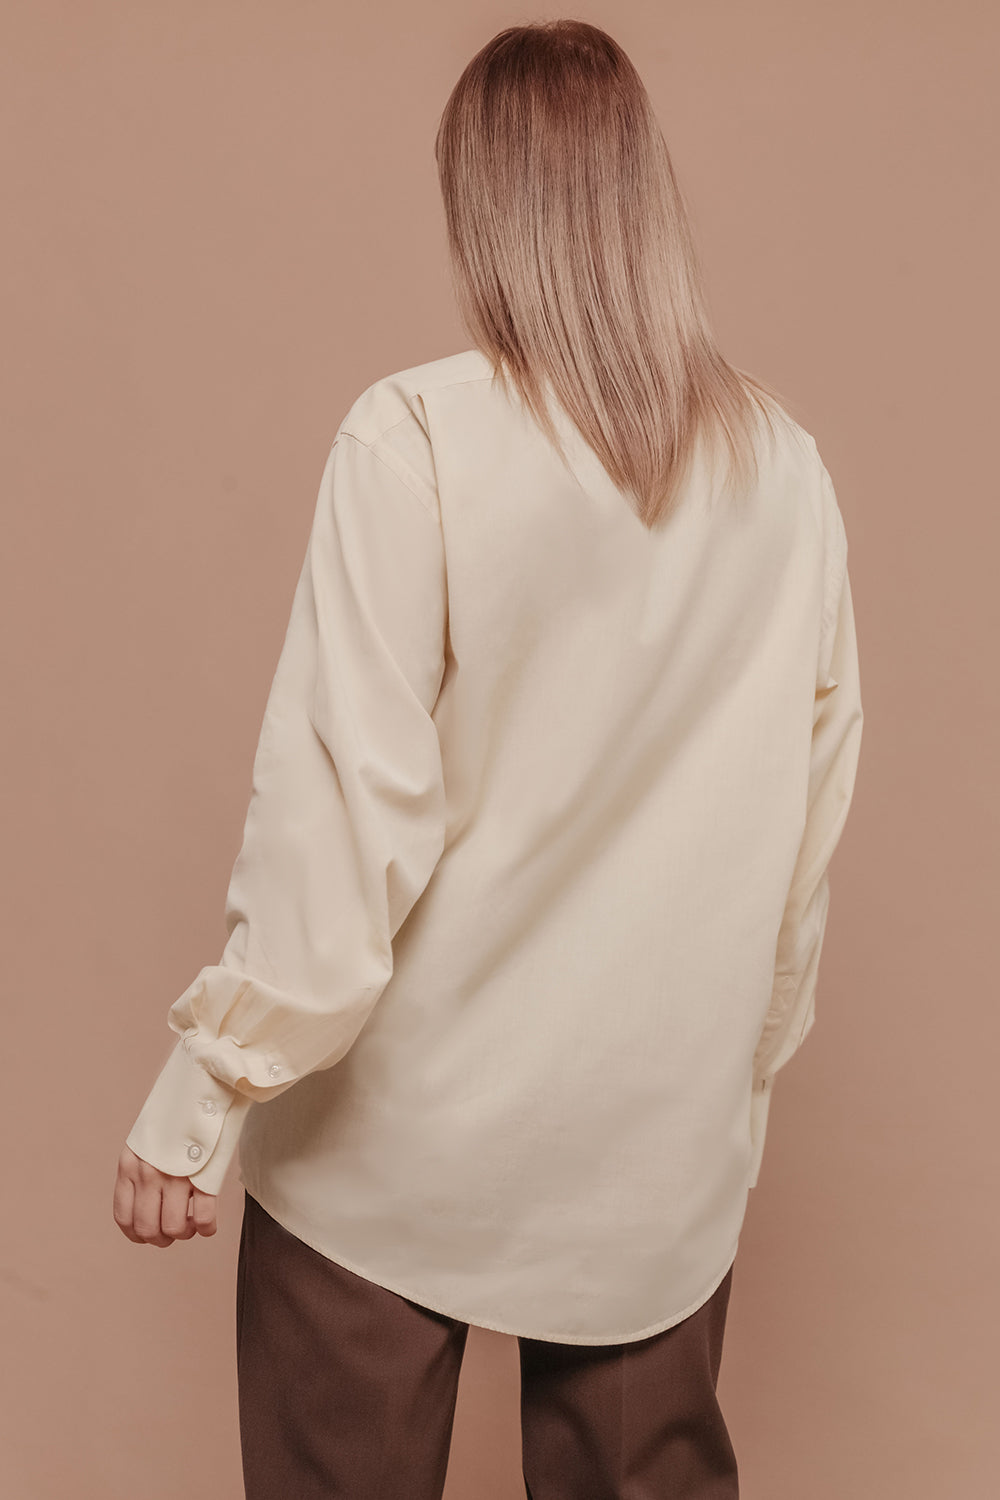 Yves Saint Laurent 100% Cotton Oversized Shirt Size L